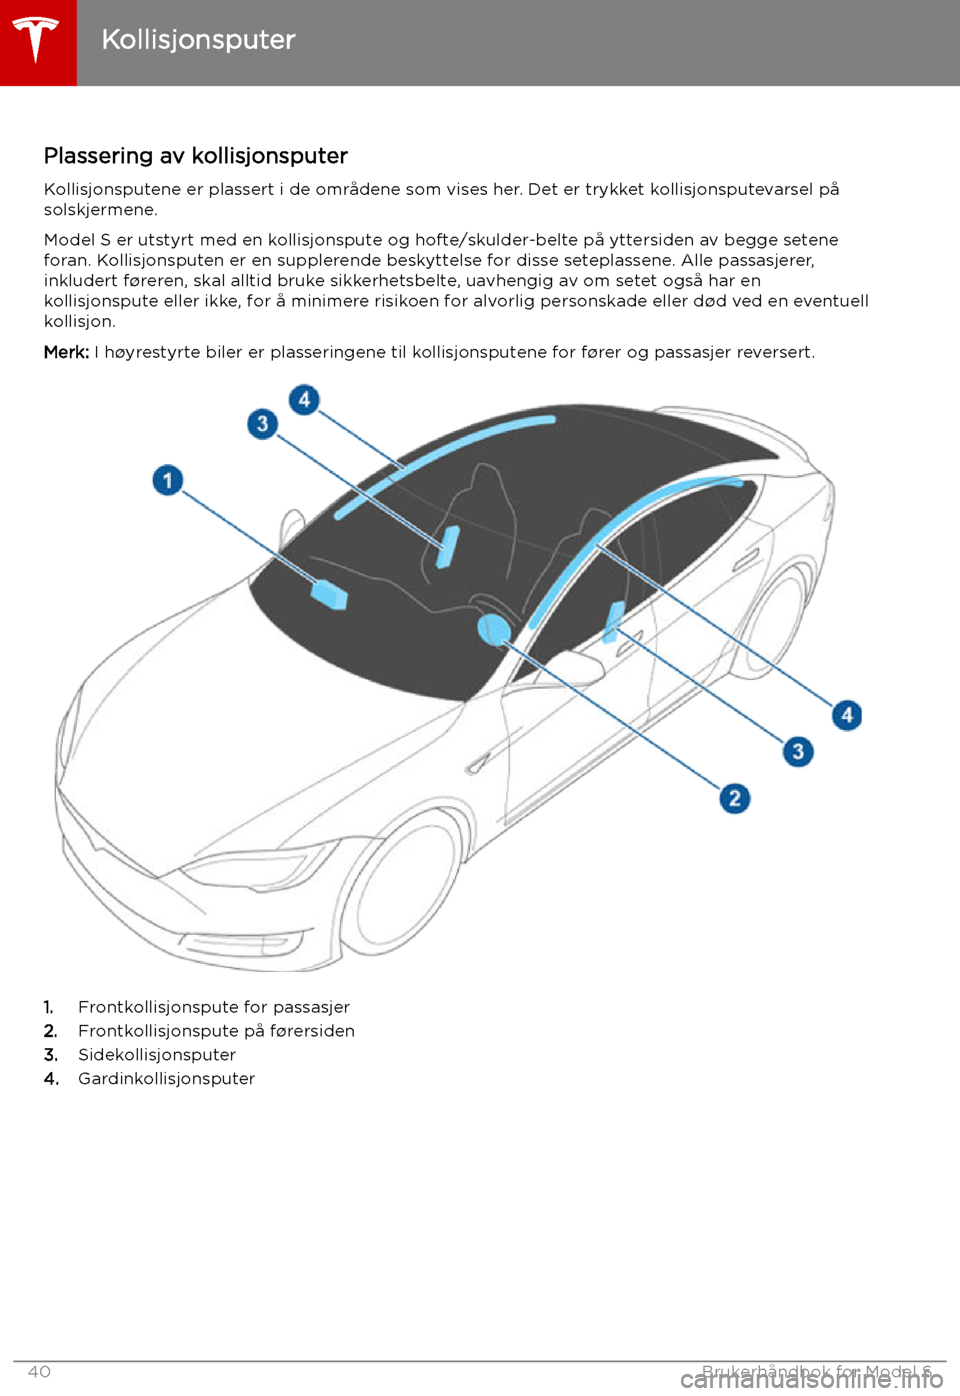 TESLA MODEL S 2019  Brukerhåndbok (in Norwegian) Kollisjonsputer
Plassering av kollisjonsputer Kollisjonsputene er plassert i de områdene som vises her. Det er trykket kollisjonsputevarsel påsolskjermene.
Model S er utstyrt med en kollisjonspute o